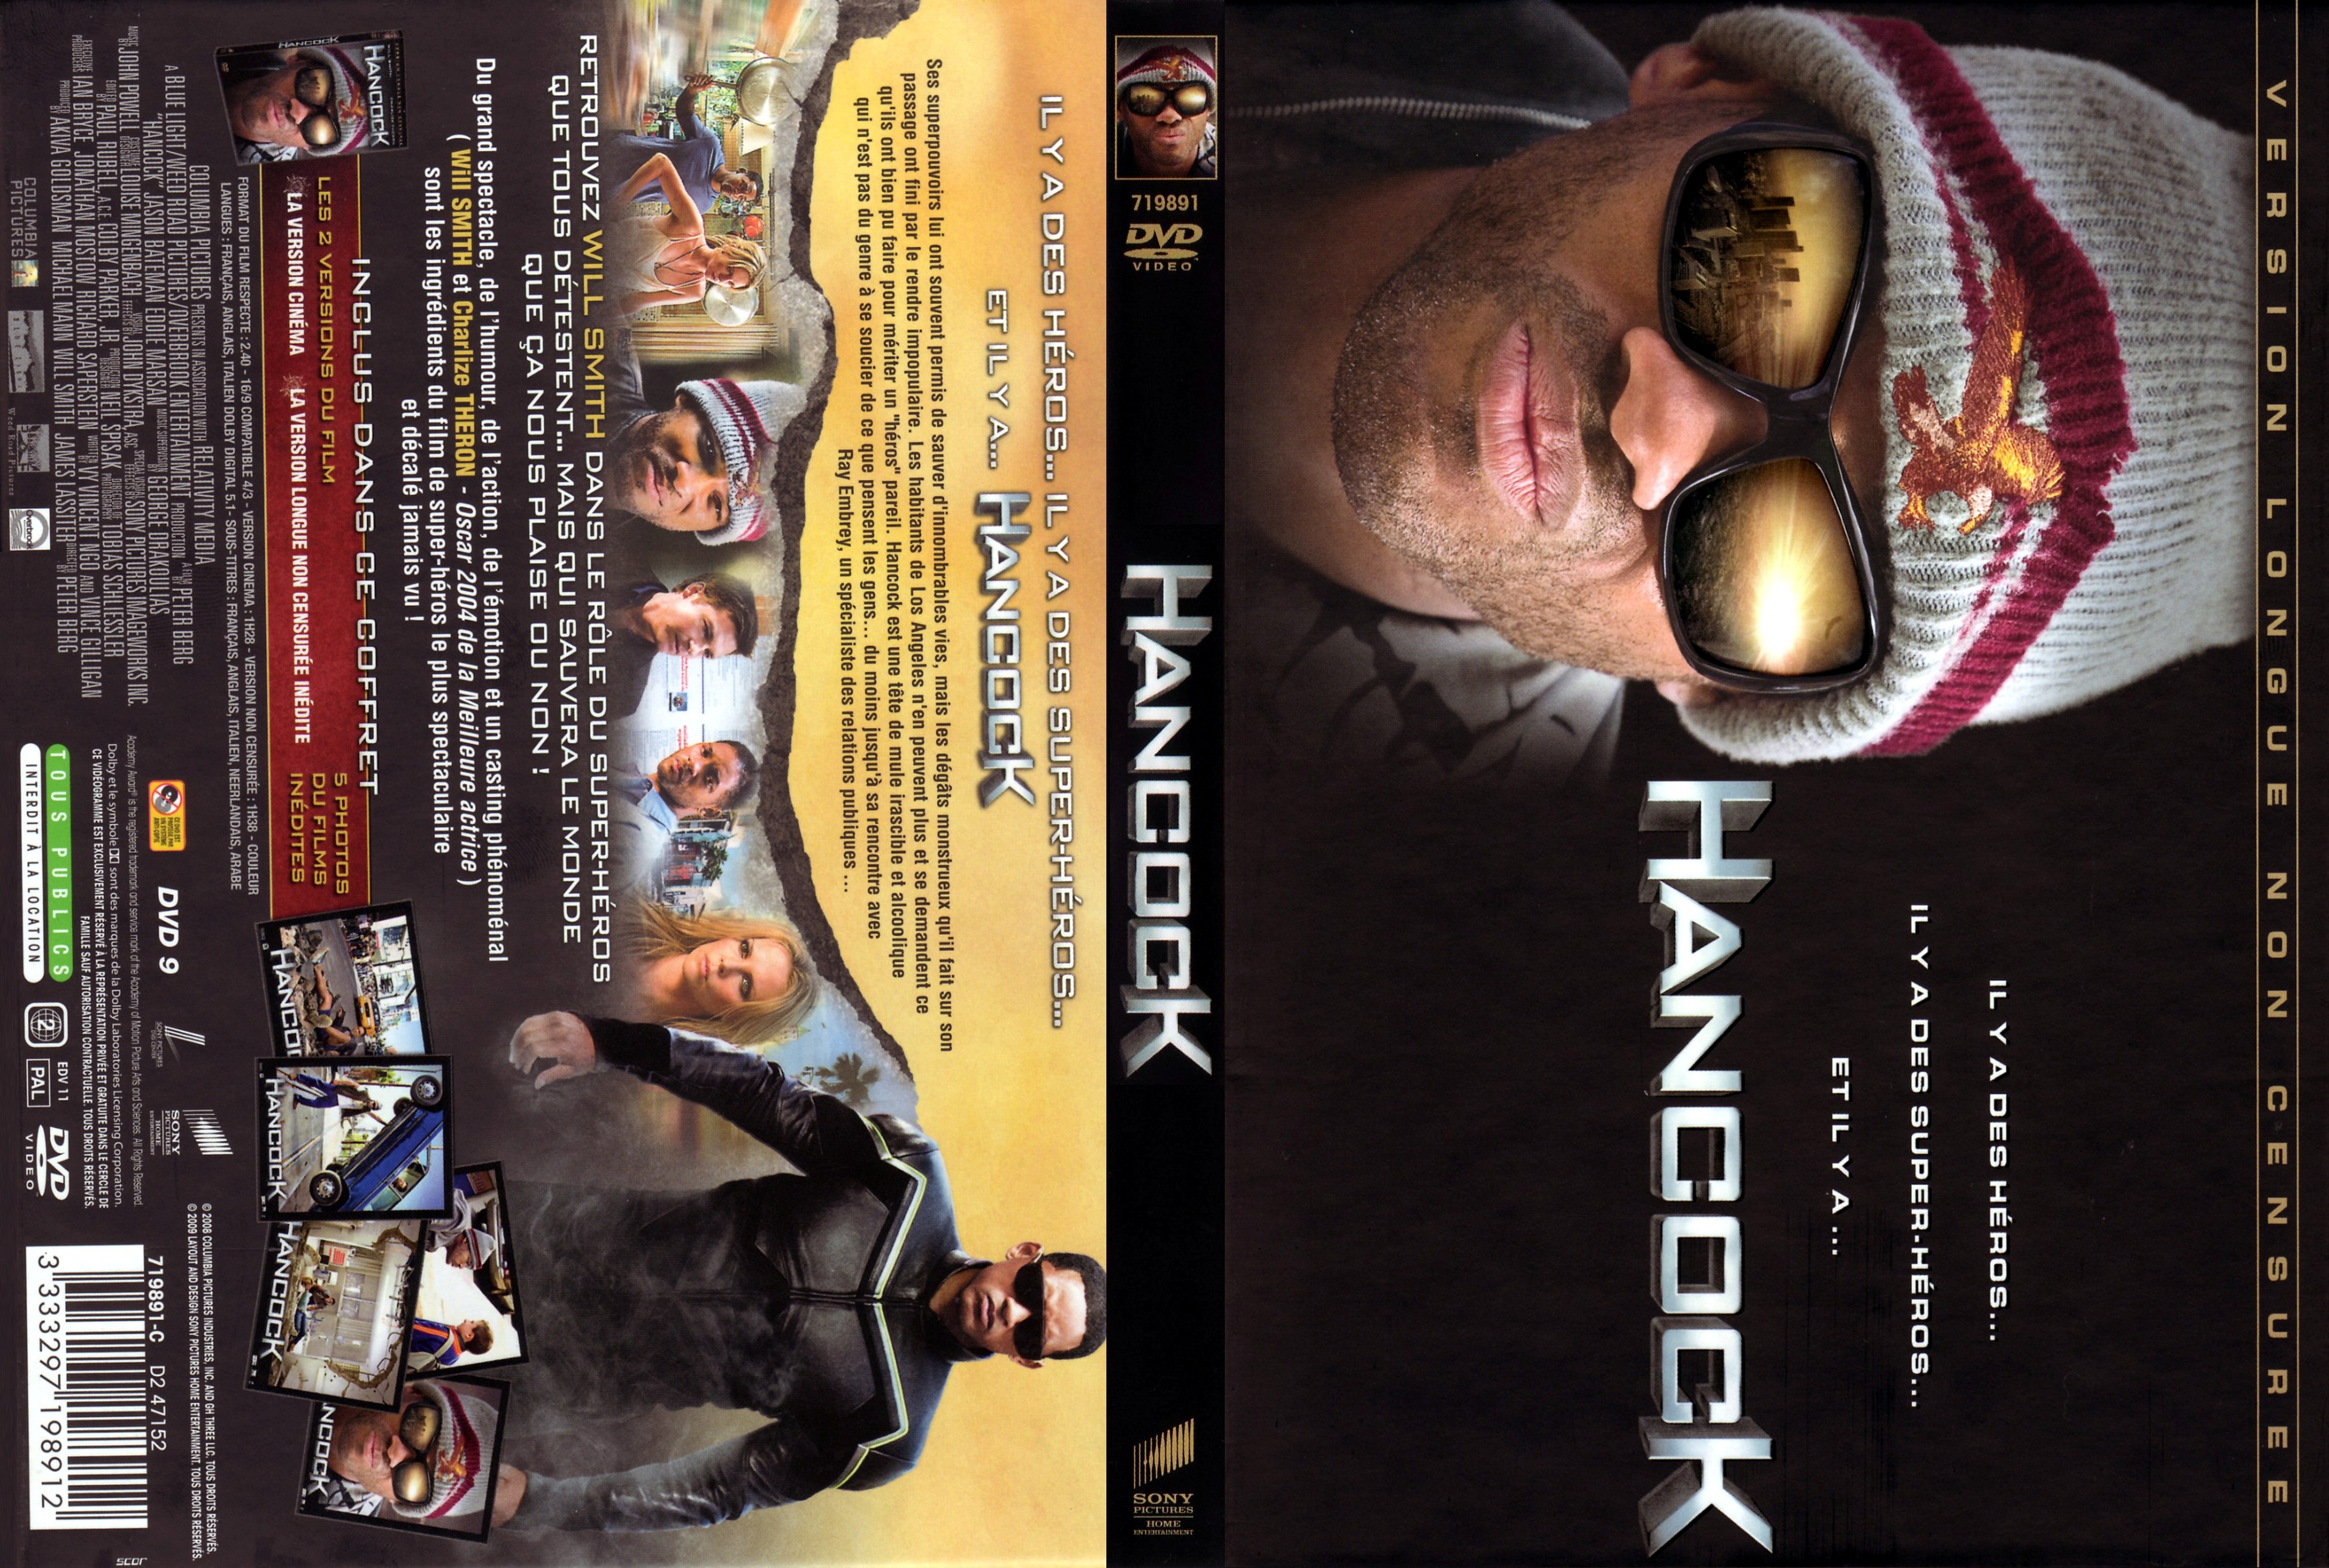 Jaquette DVD Hancock v4